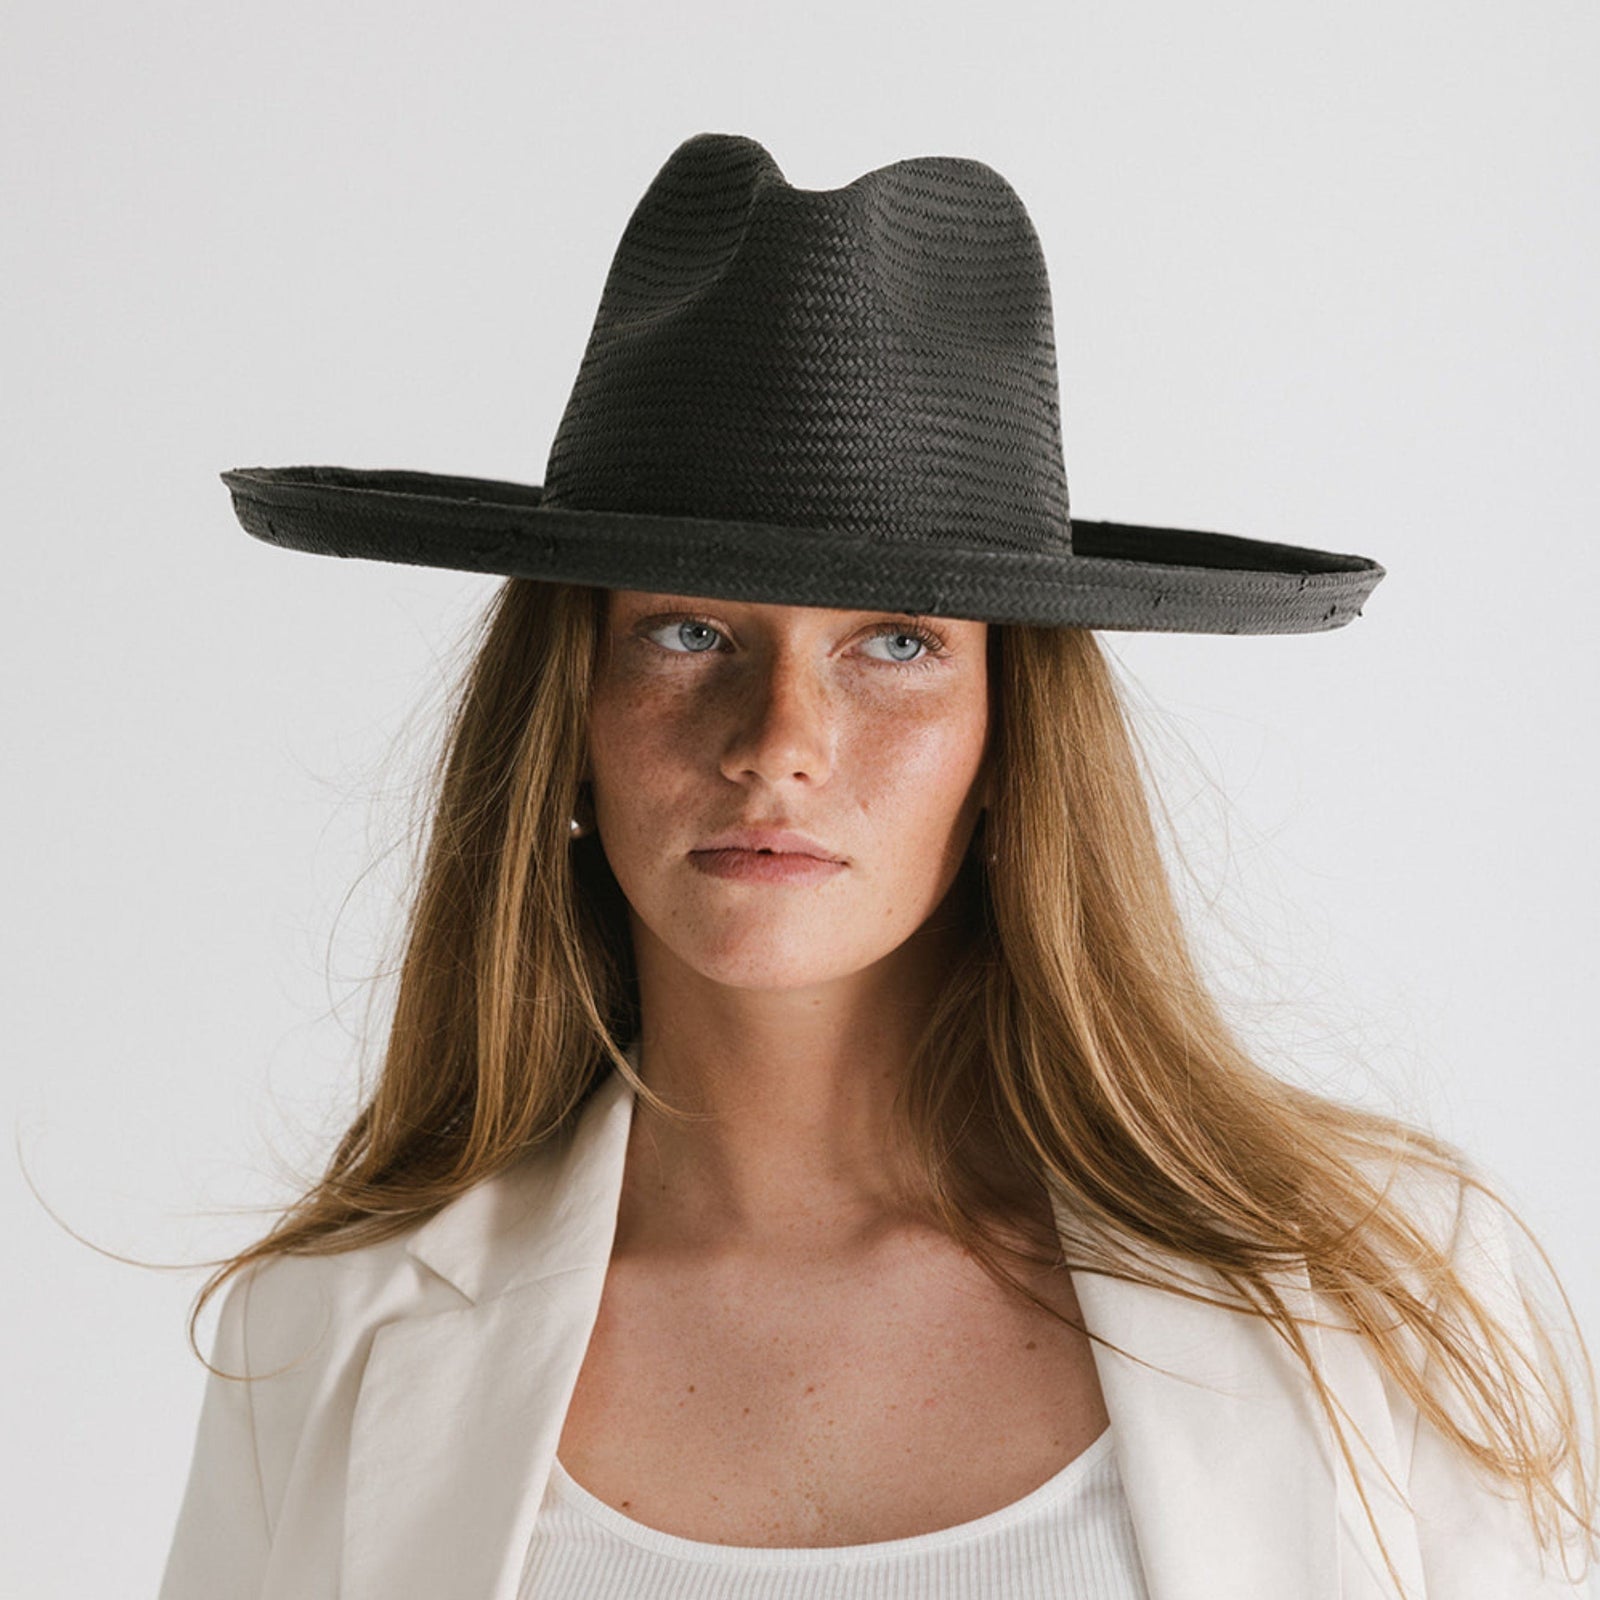 Women's Sun Hats - Best British Made Sun Hats – Rain Hat Collection